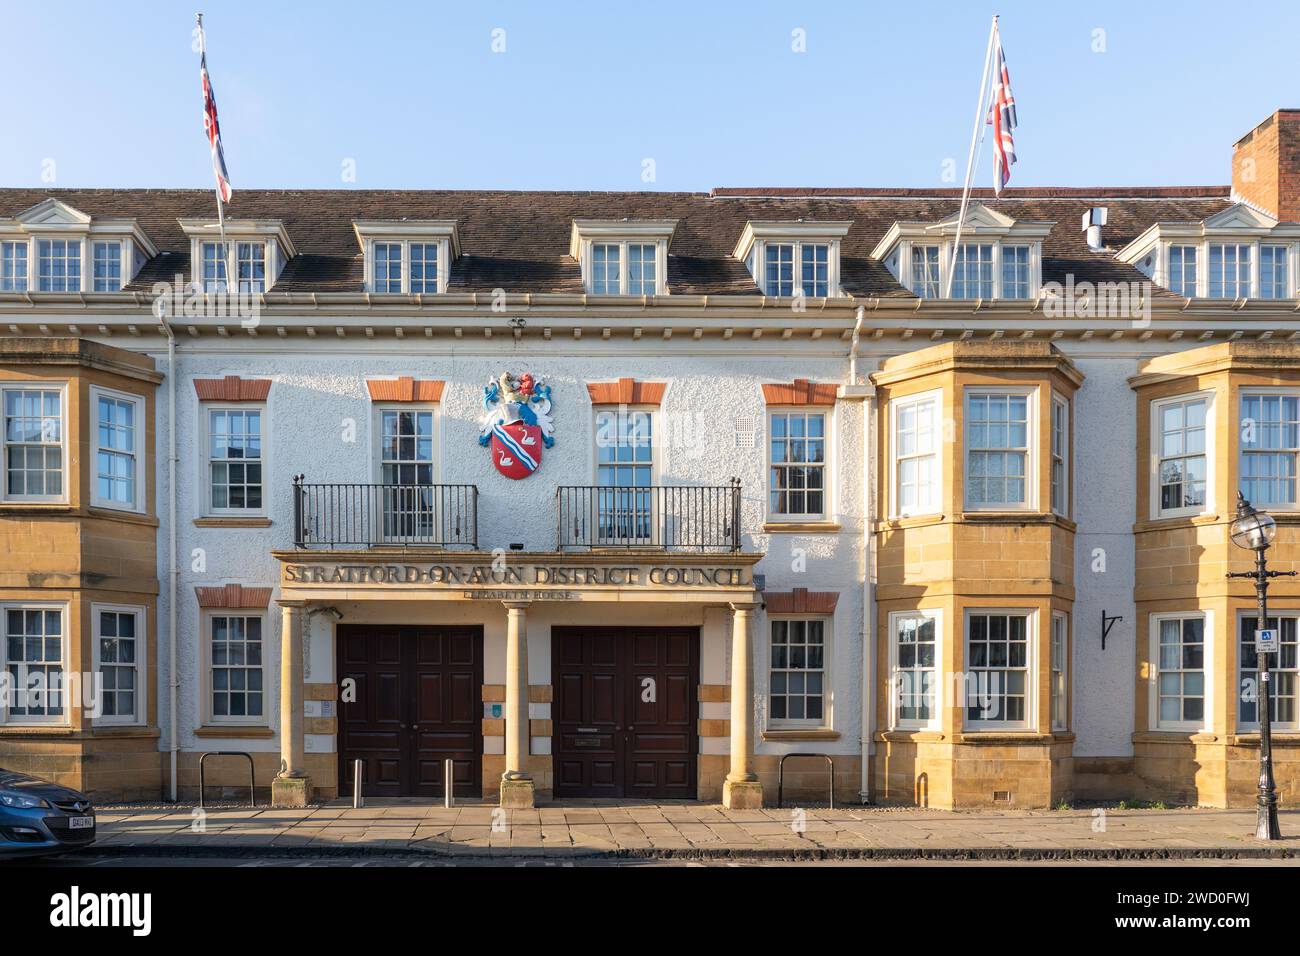 Stratford upon Avon District council Building - Elizabeth House in der Church Street - ein honigfarbenes Steingebäude mit britischen Flaggen darüber. UK Stockfoto